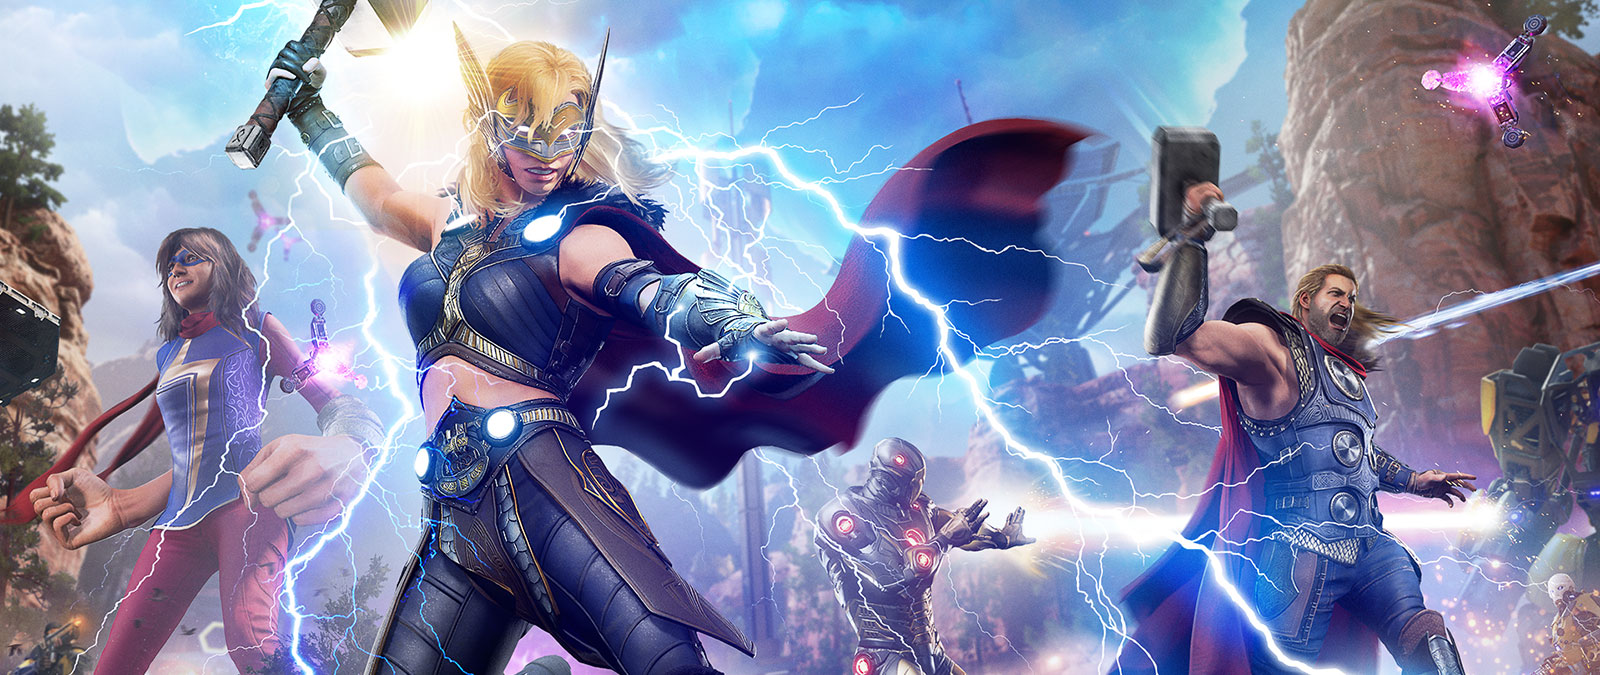 Jane Foster, alias Mighty Thor, libère un éclair sur un ennemi mécanique.